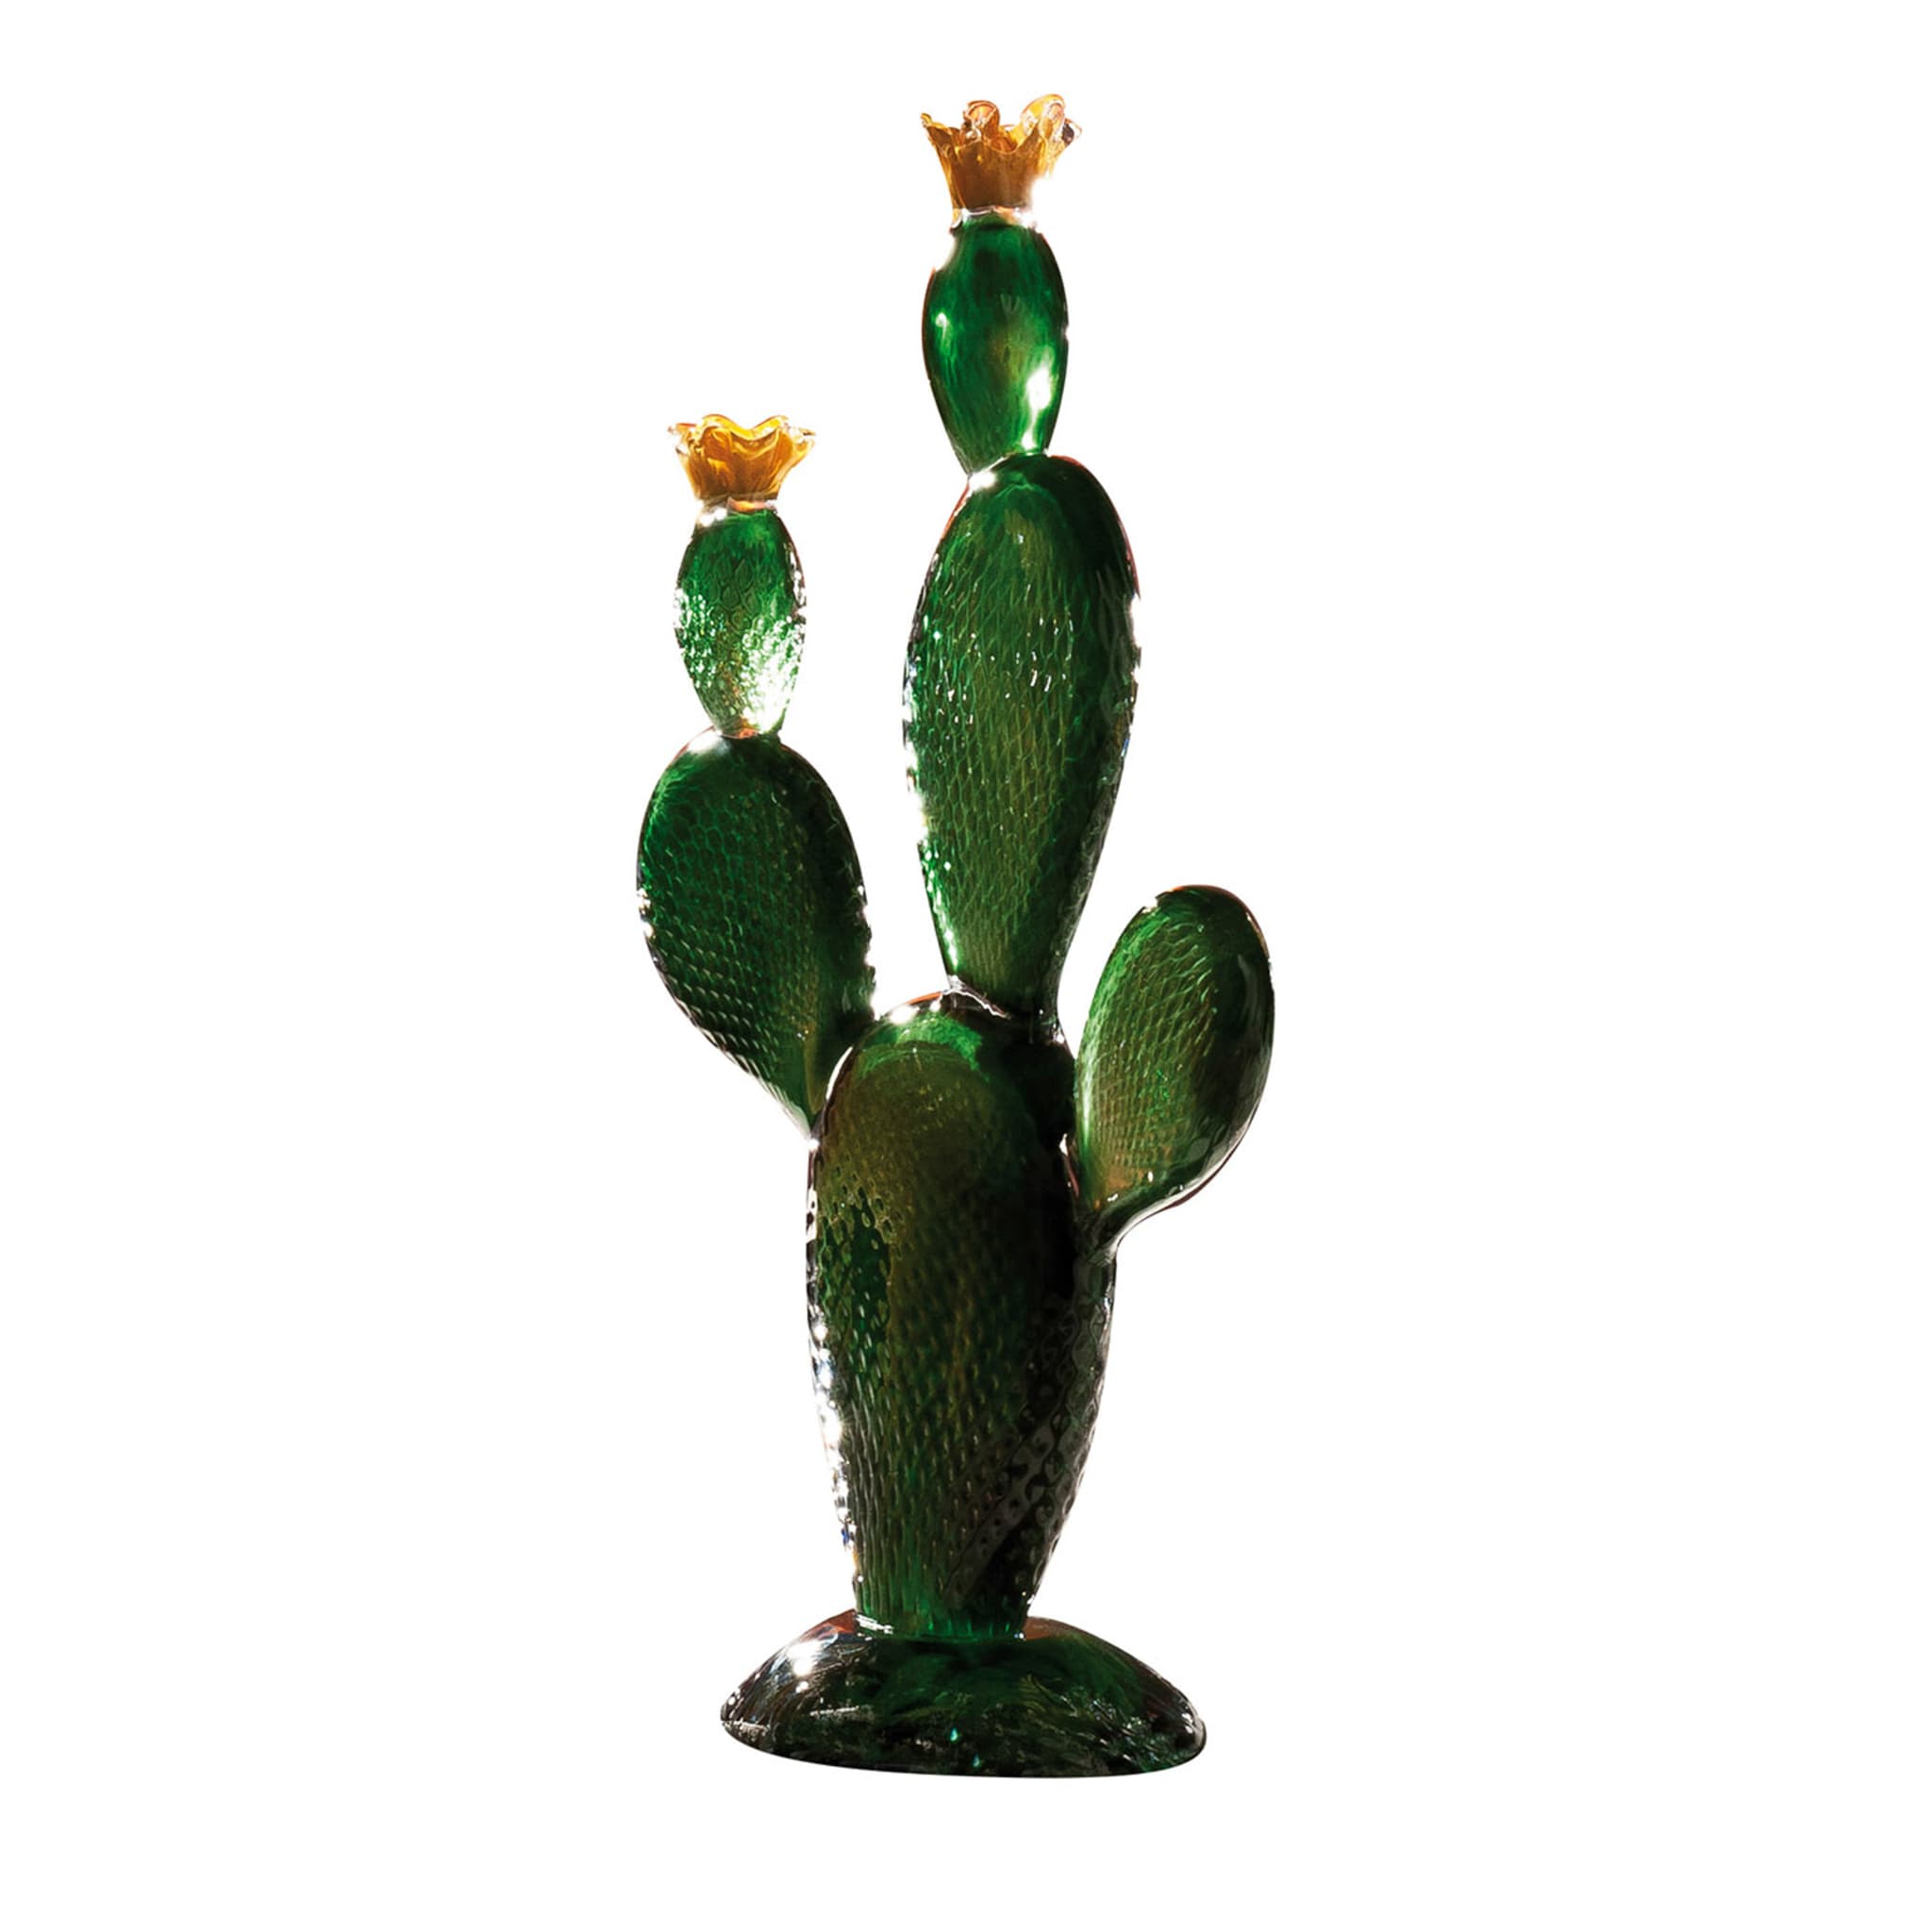 Grande cactus verde - Vista principale